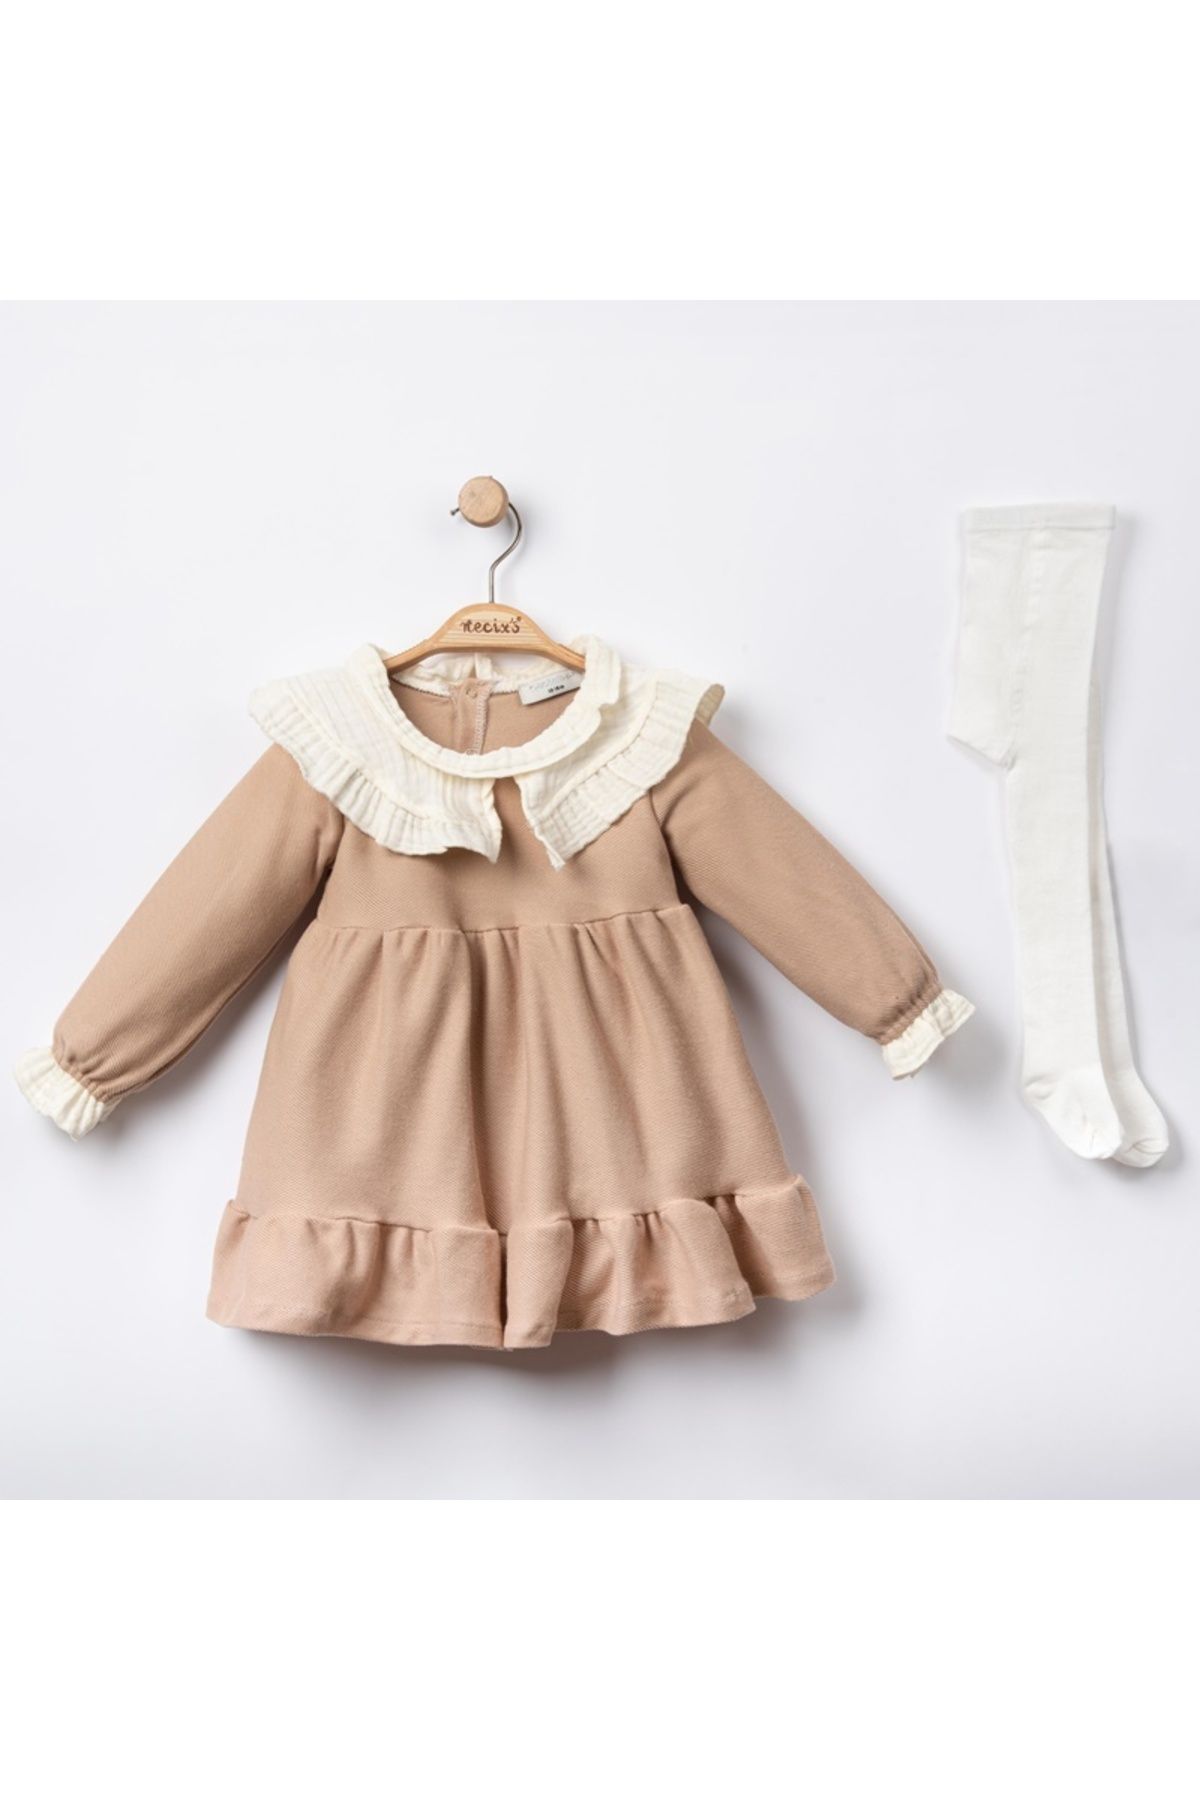 Necix's Kıvançkids Londra Kız Bebek Özgün Elbise